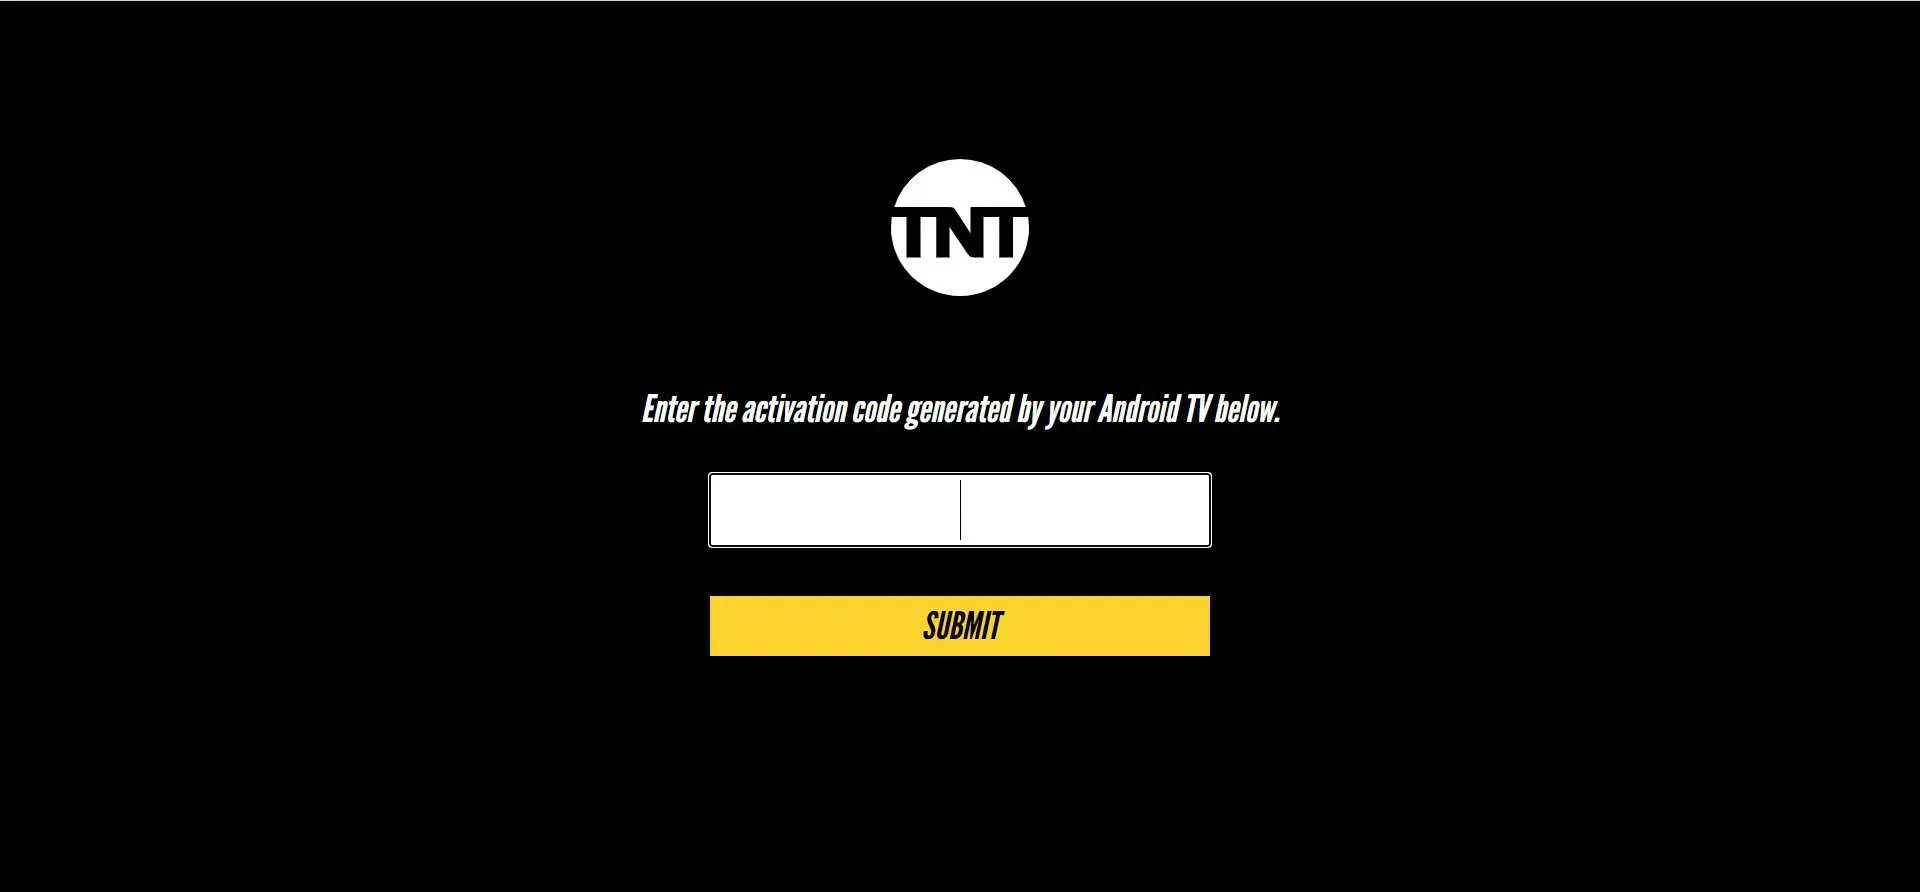 tntdrama.com/activate Login: Trin til at indtaste aktiveringskoden for TNT Drama